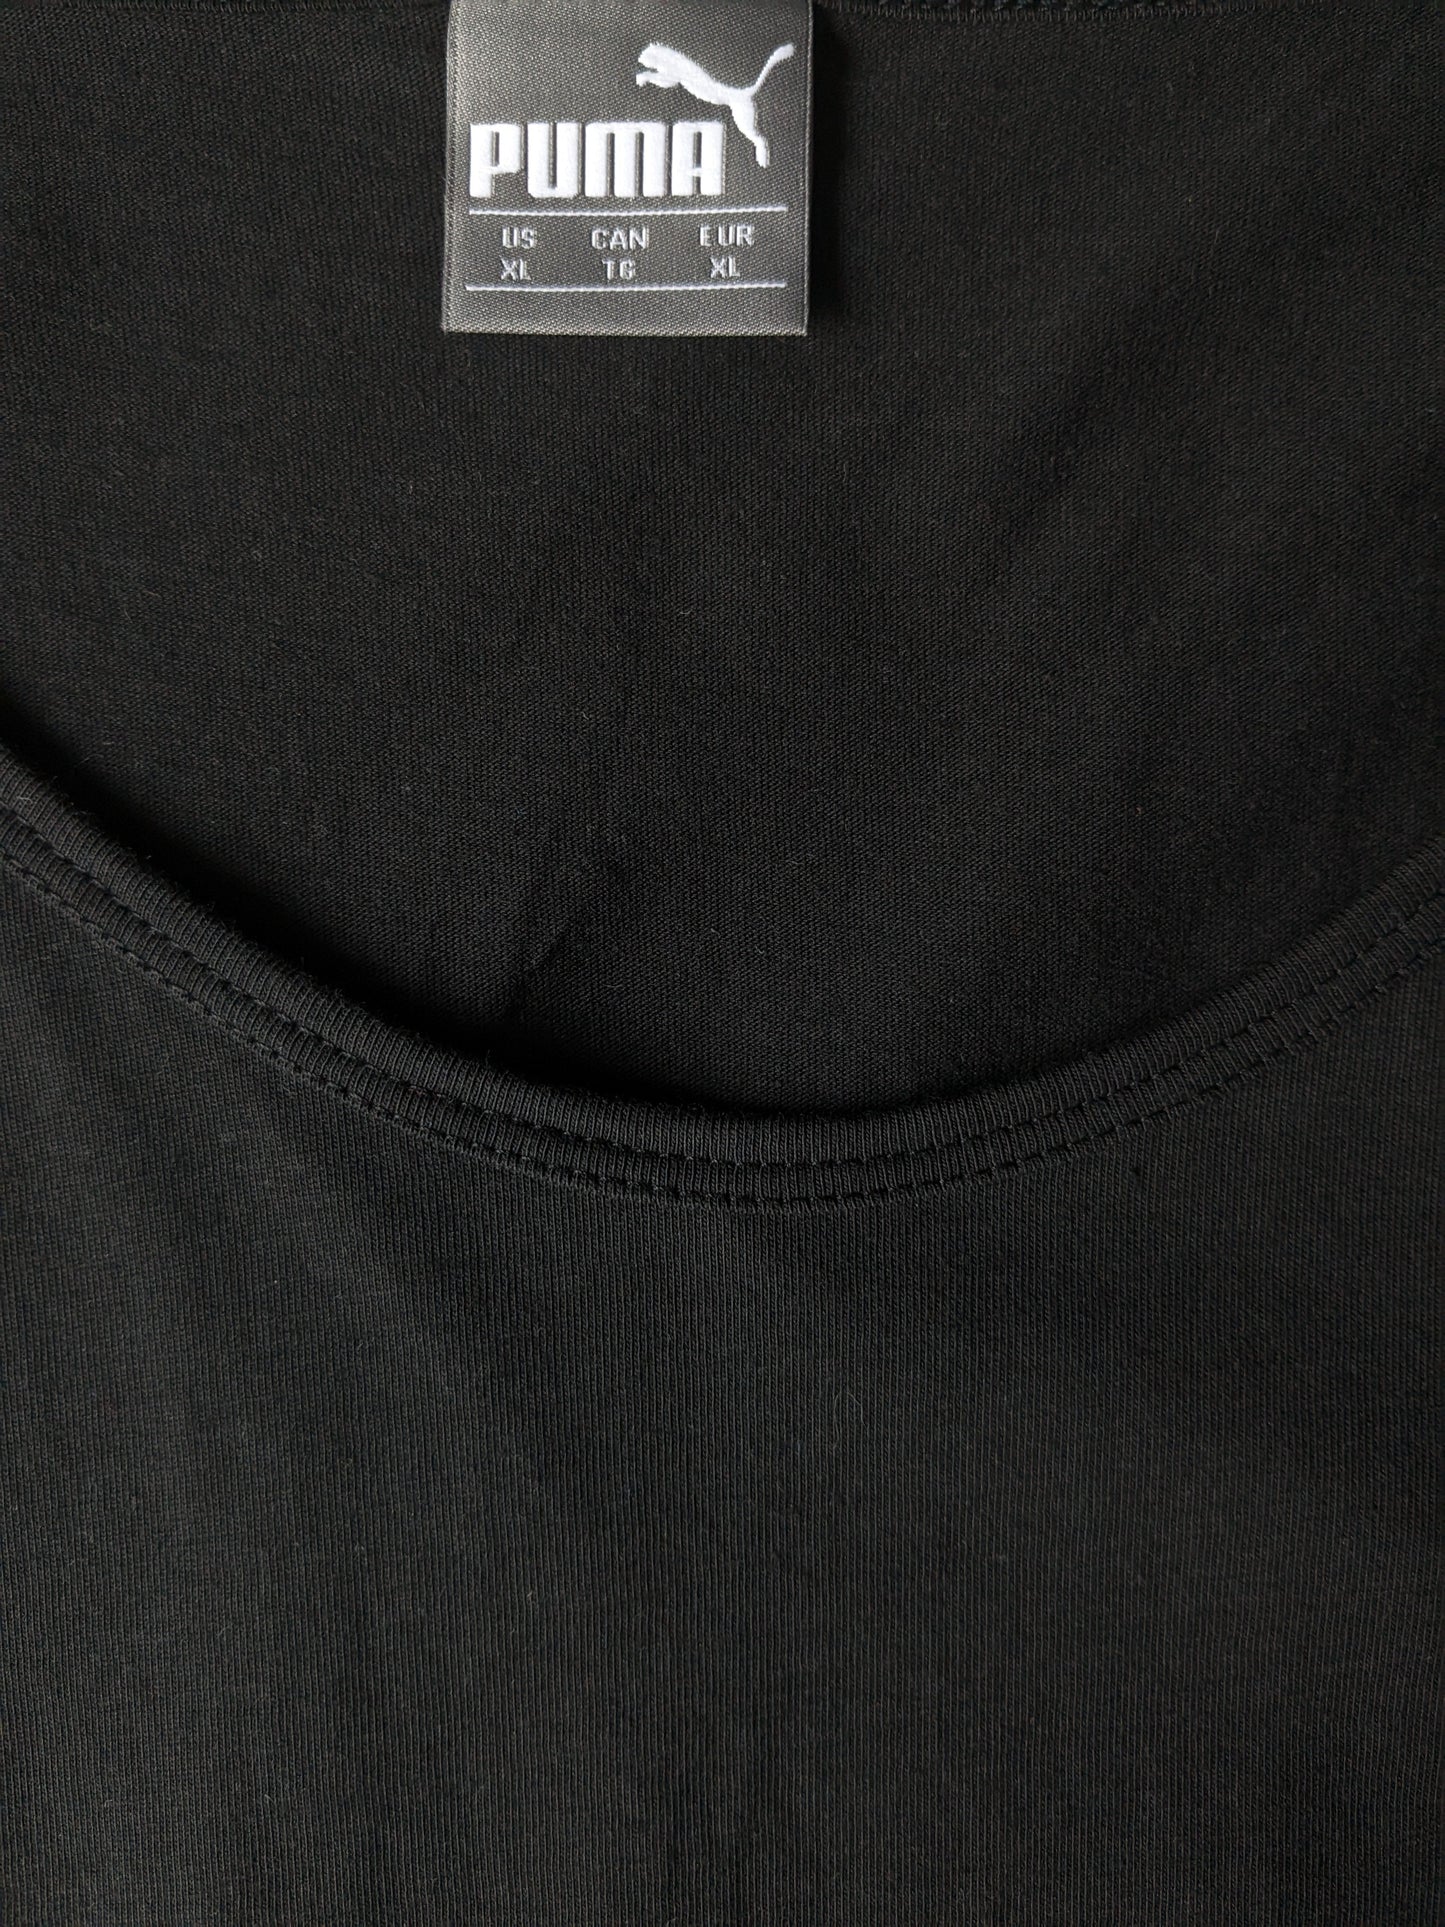 Puma sporty singlet. Black with print. Size XL.